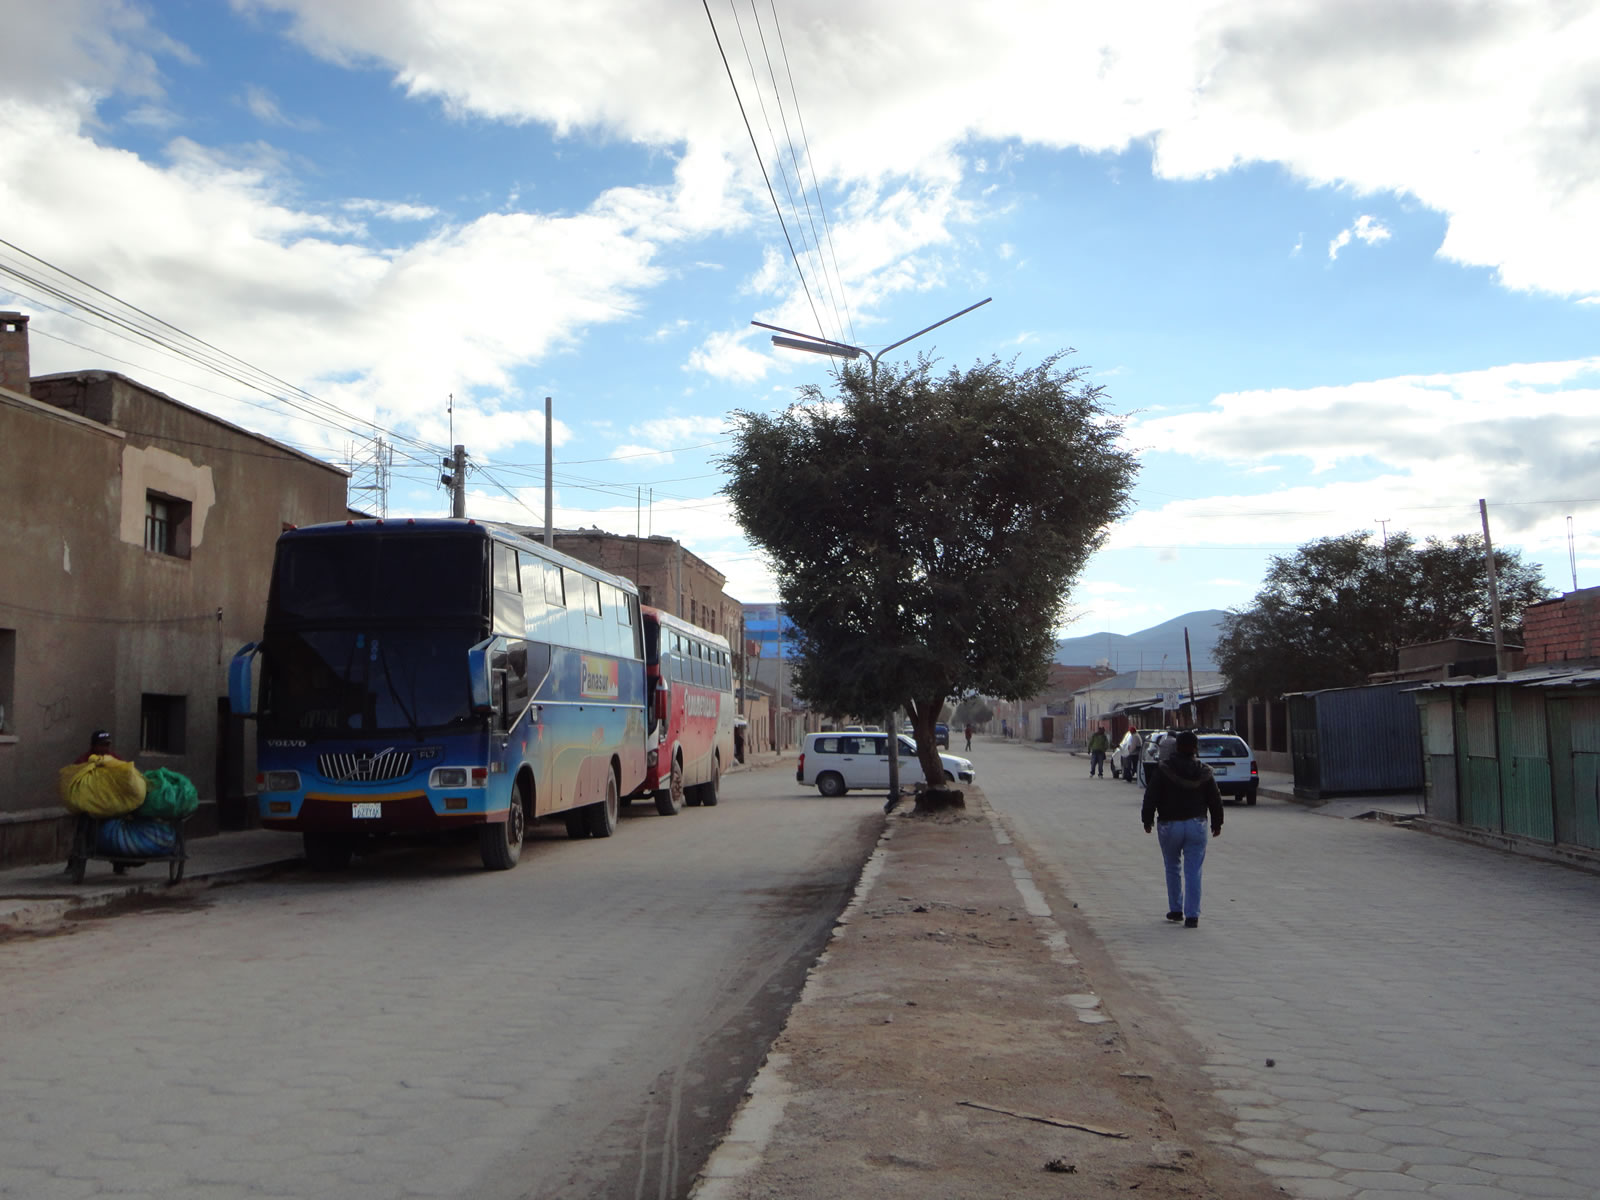 Buses in Uyuni